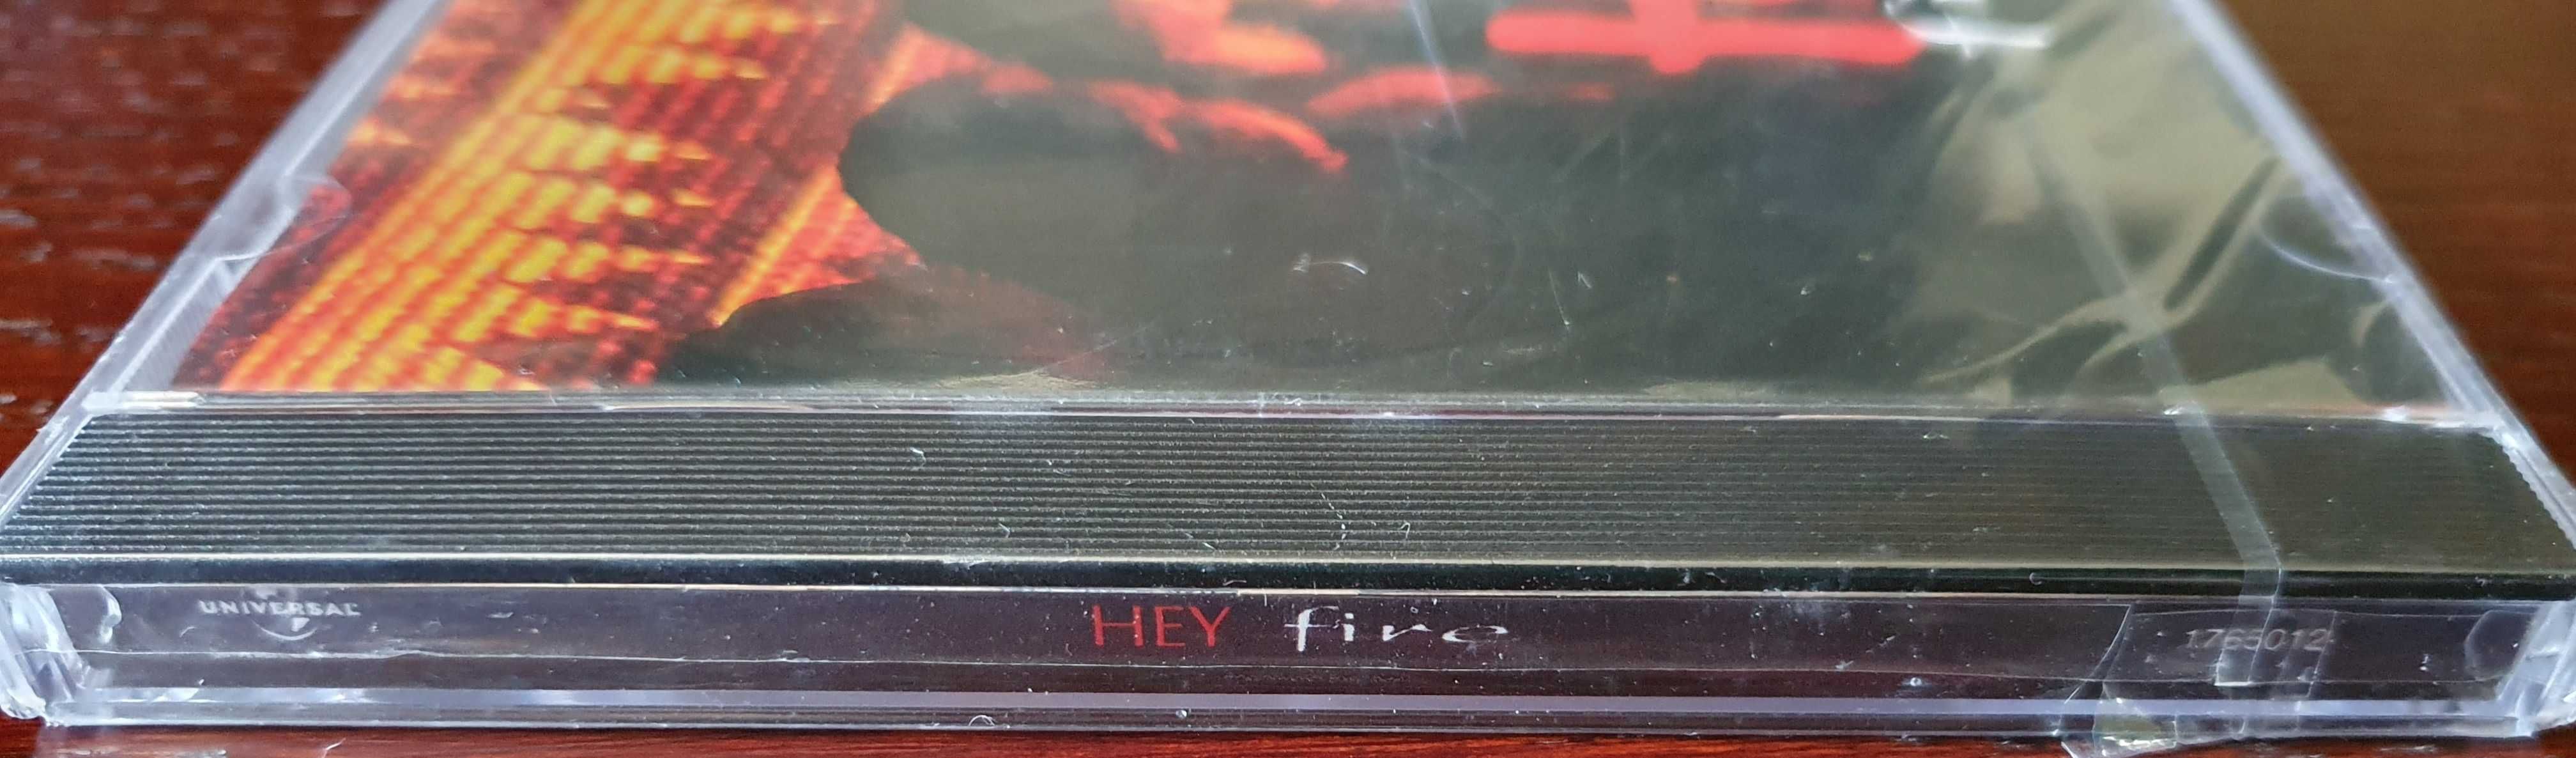 Płyta kompaktowa CD Hey  - Fire